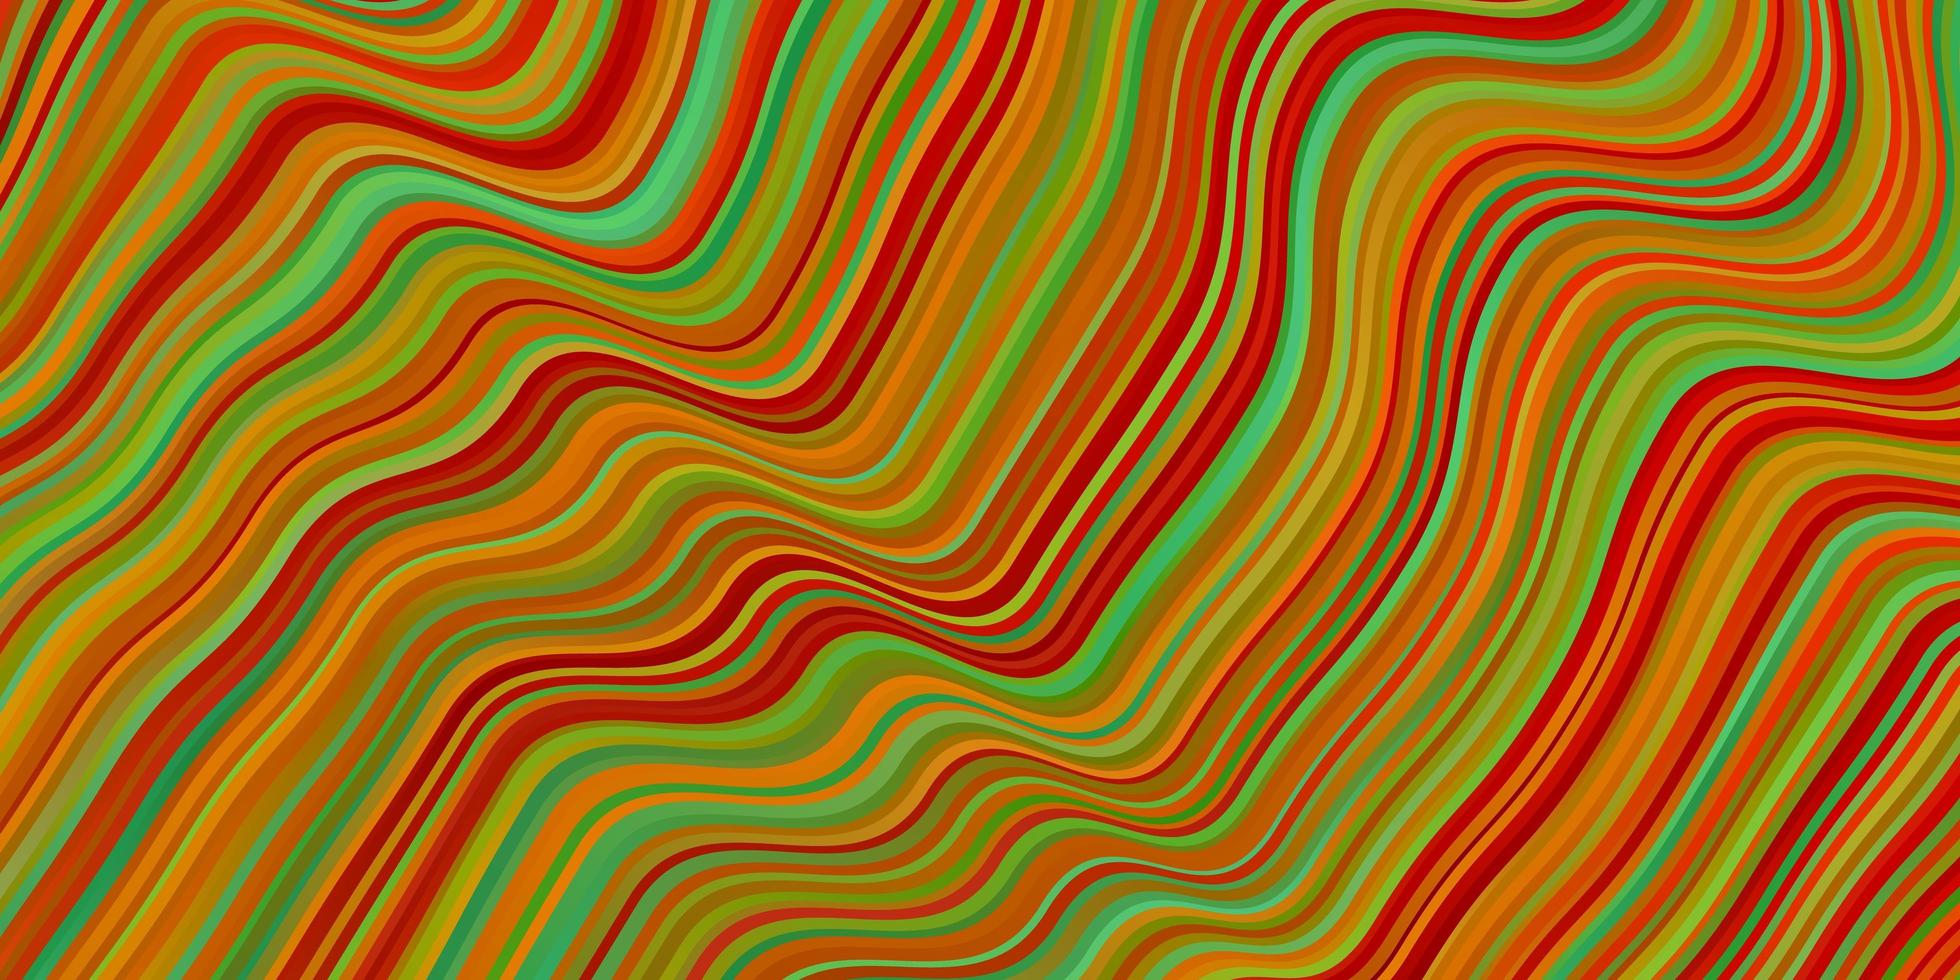 fond vectoriel multicolore clair avec illustration colorée de lignes pliées qui se compose de courbes pour la promotion de votre entreprise